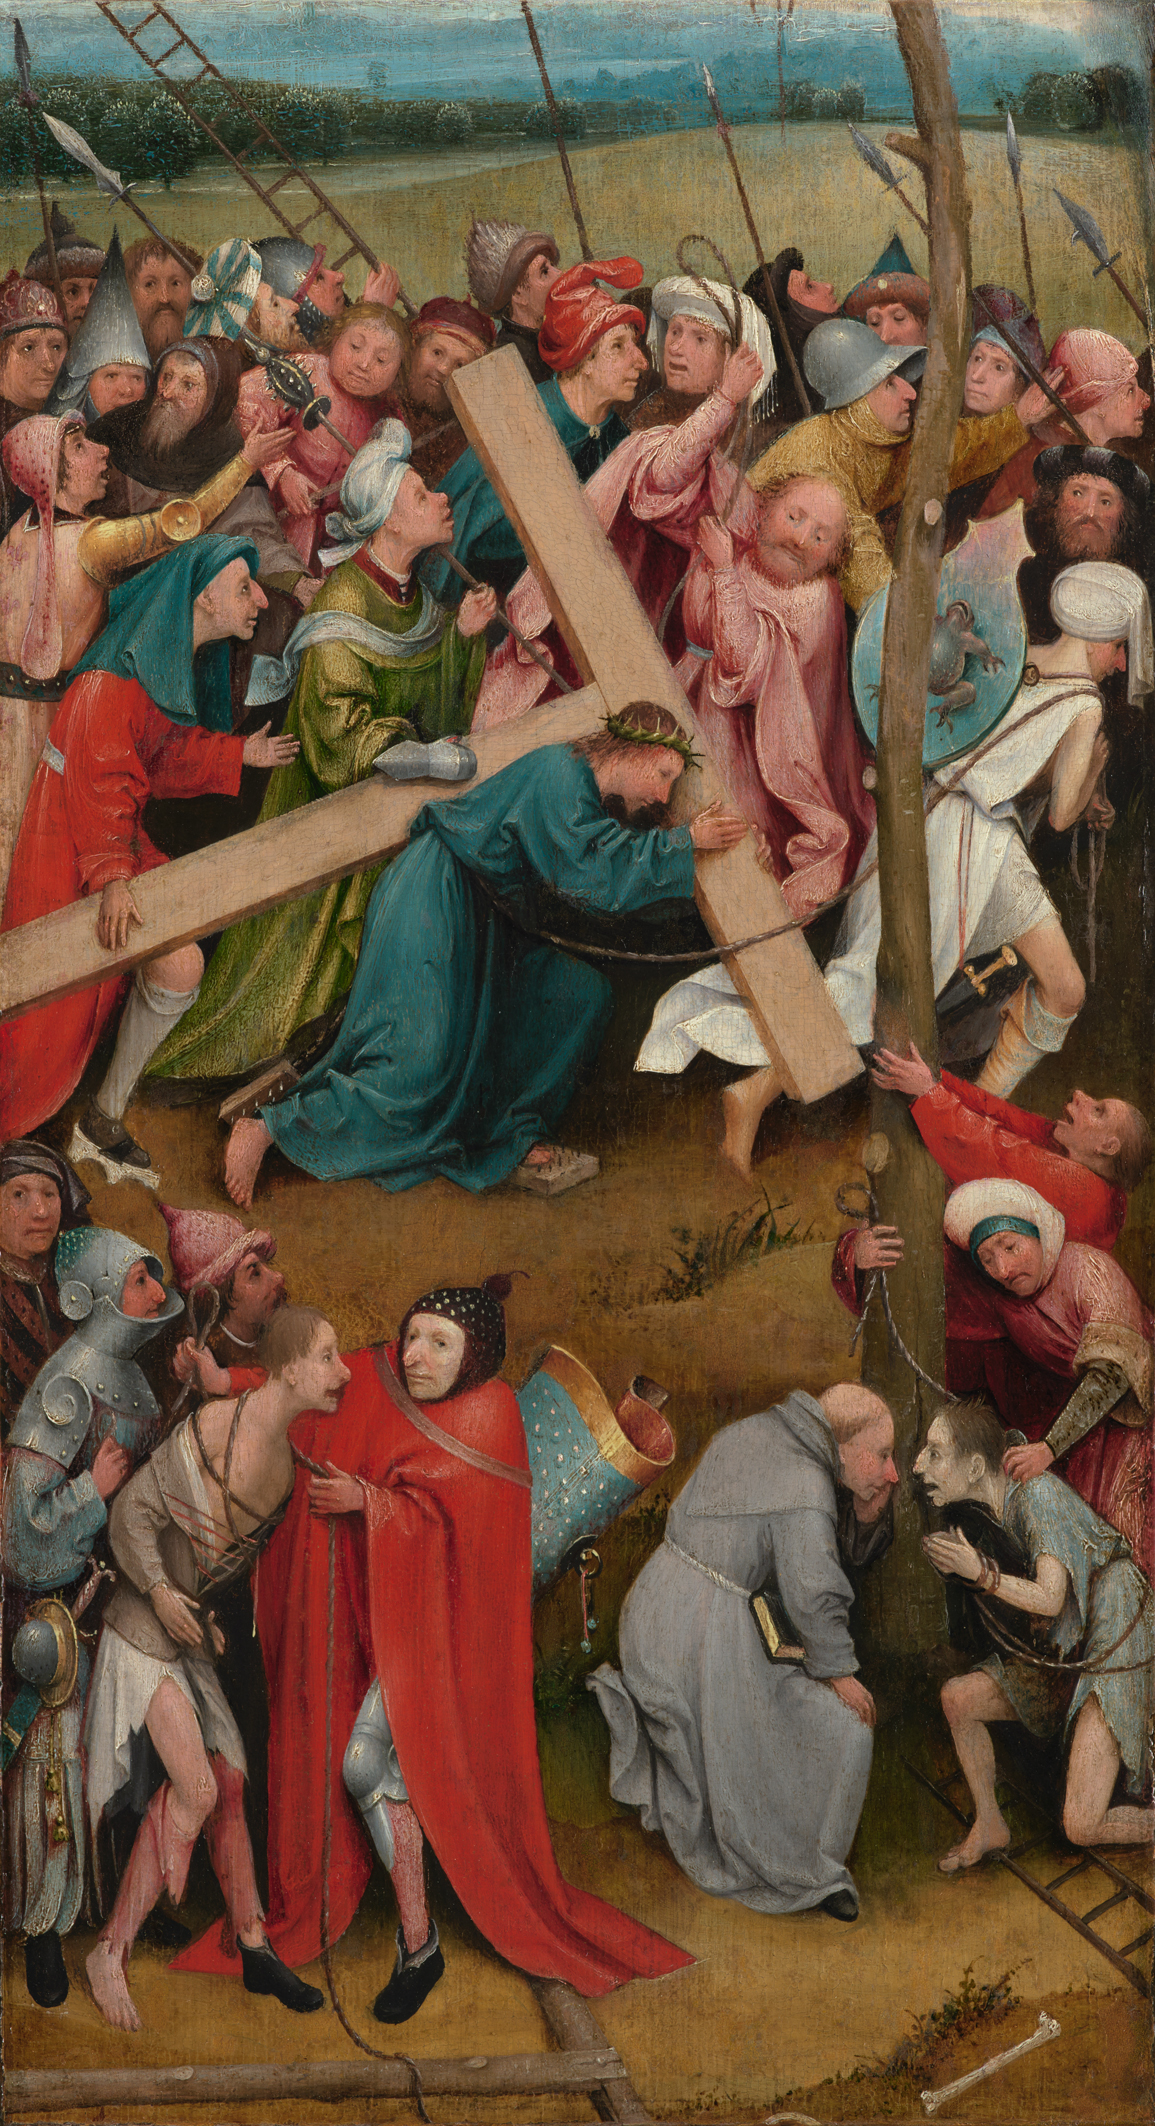 Christus draagt het Kruis by Hieronymus Bosch - 1480/90 - 57 cm × 32 cm Kunsthistorisches Museum